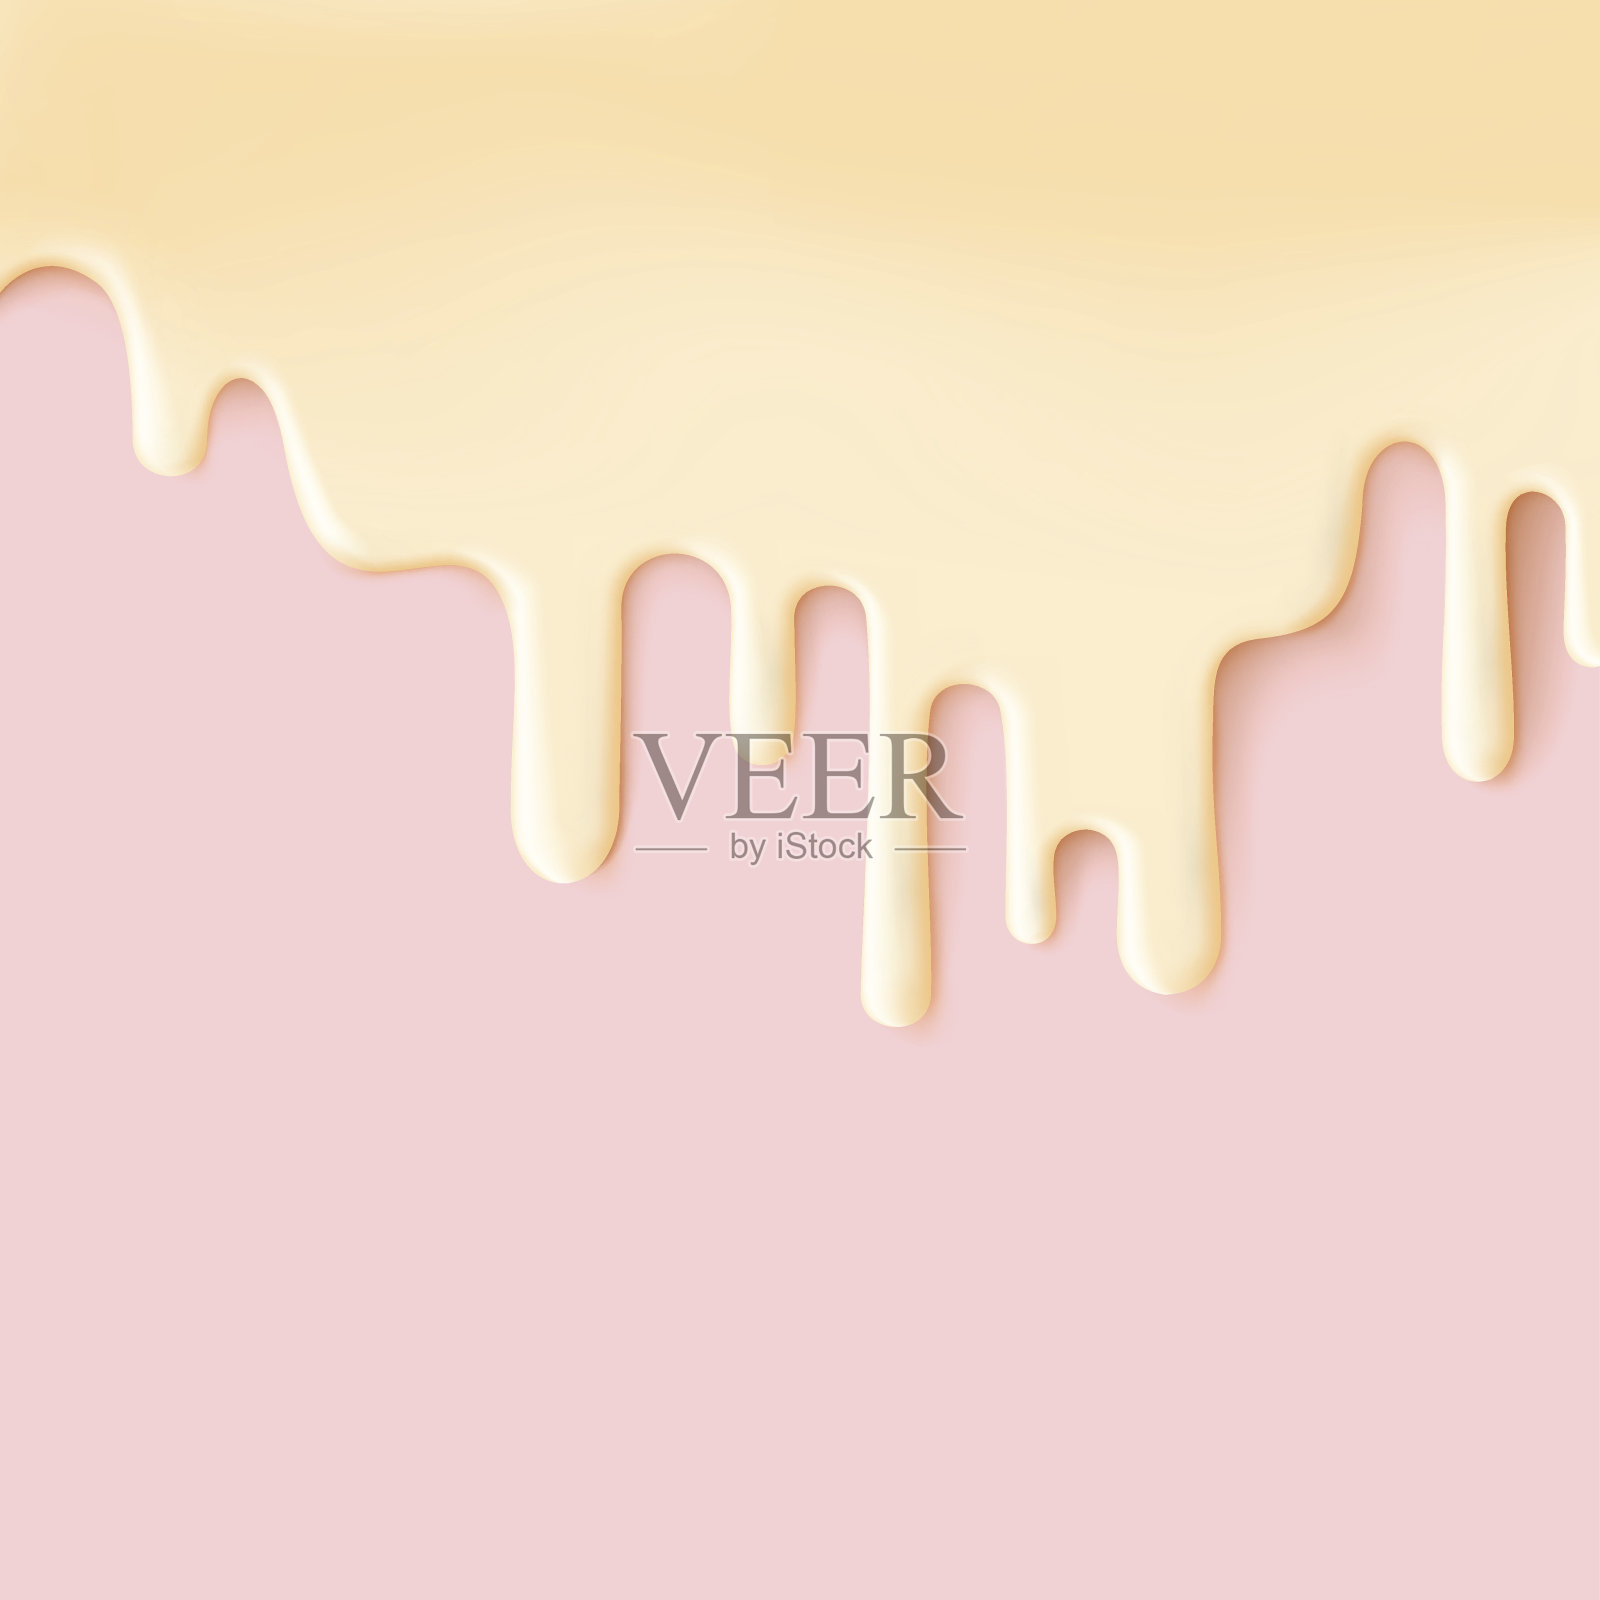 流黄釉上粉红纹理的甜食矢量背景抽象。
使冰淇淋表面融化。可编辑-容易改变颜色。插画图片素材